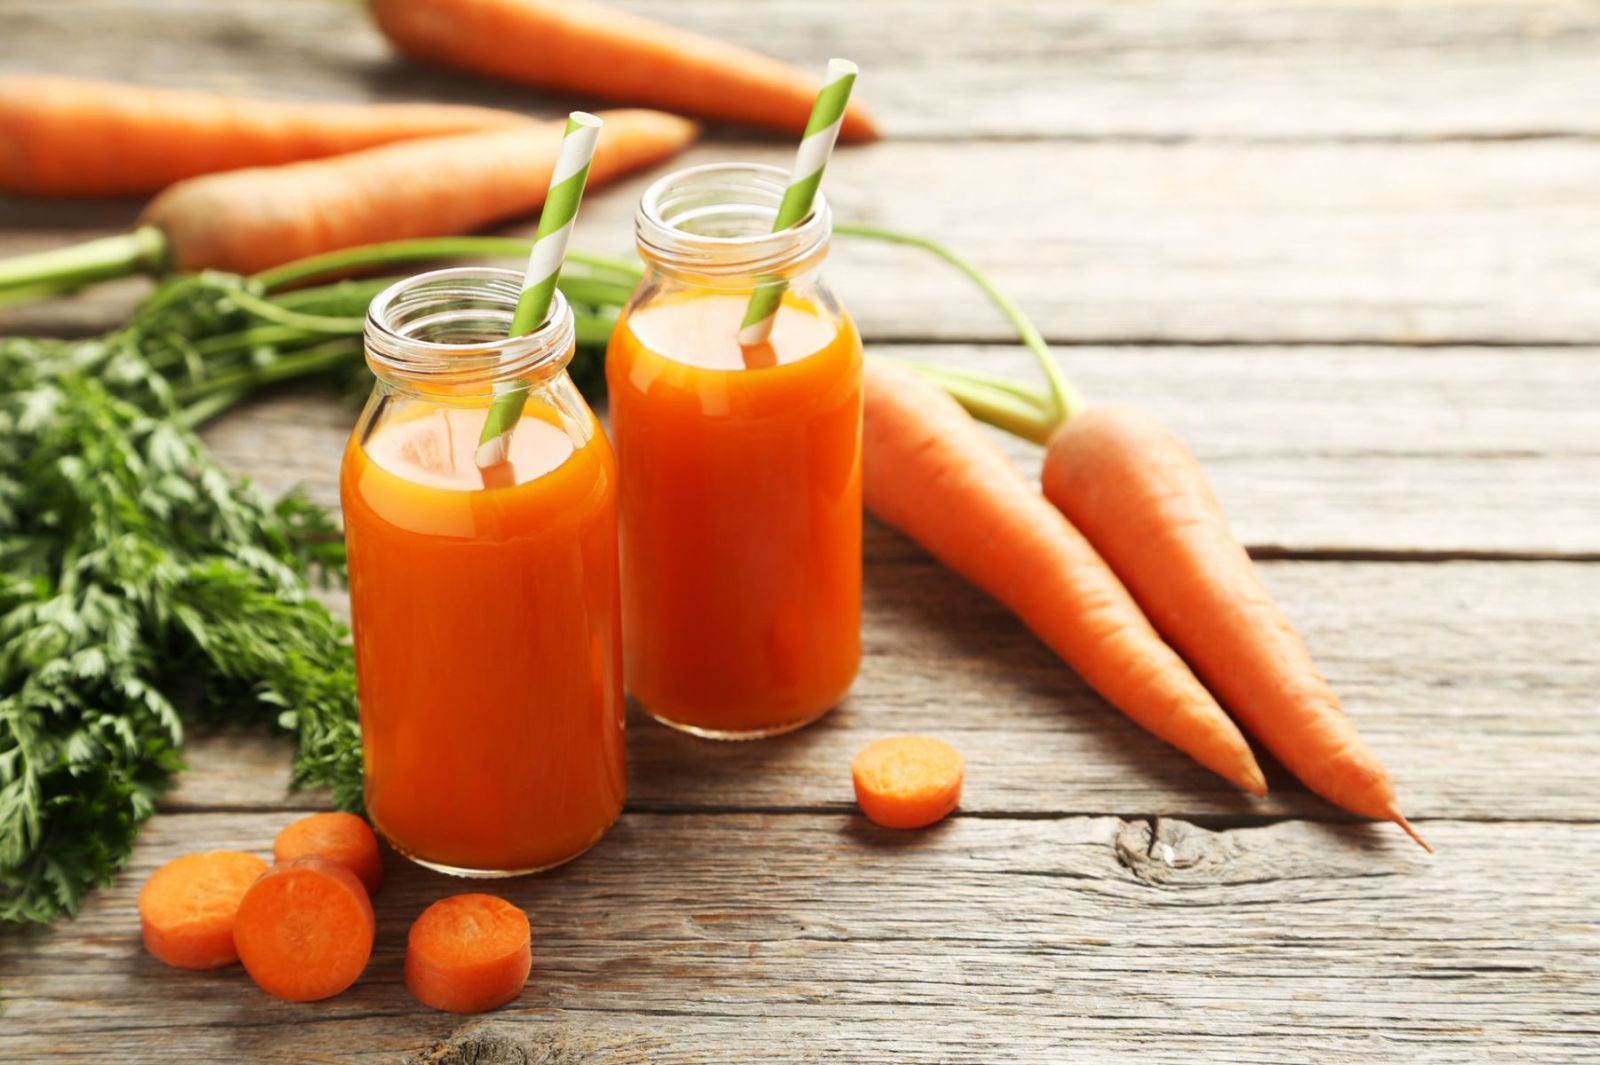 Cà rốt là một loại rau có thể cung cấp nhiều chất dinh dưỡng cần thiết cho cơ thể